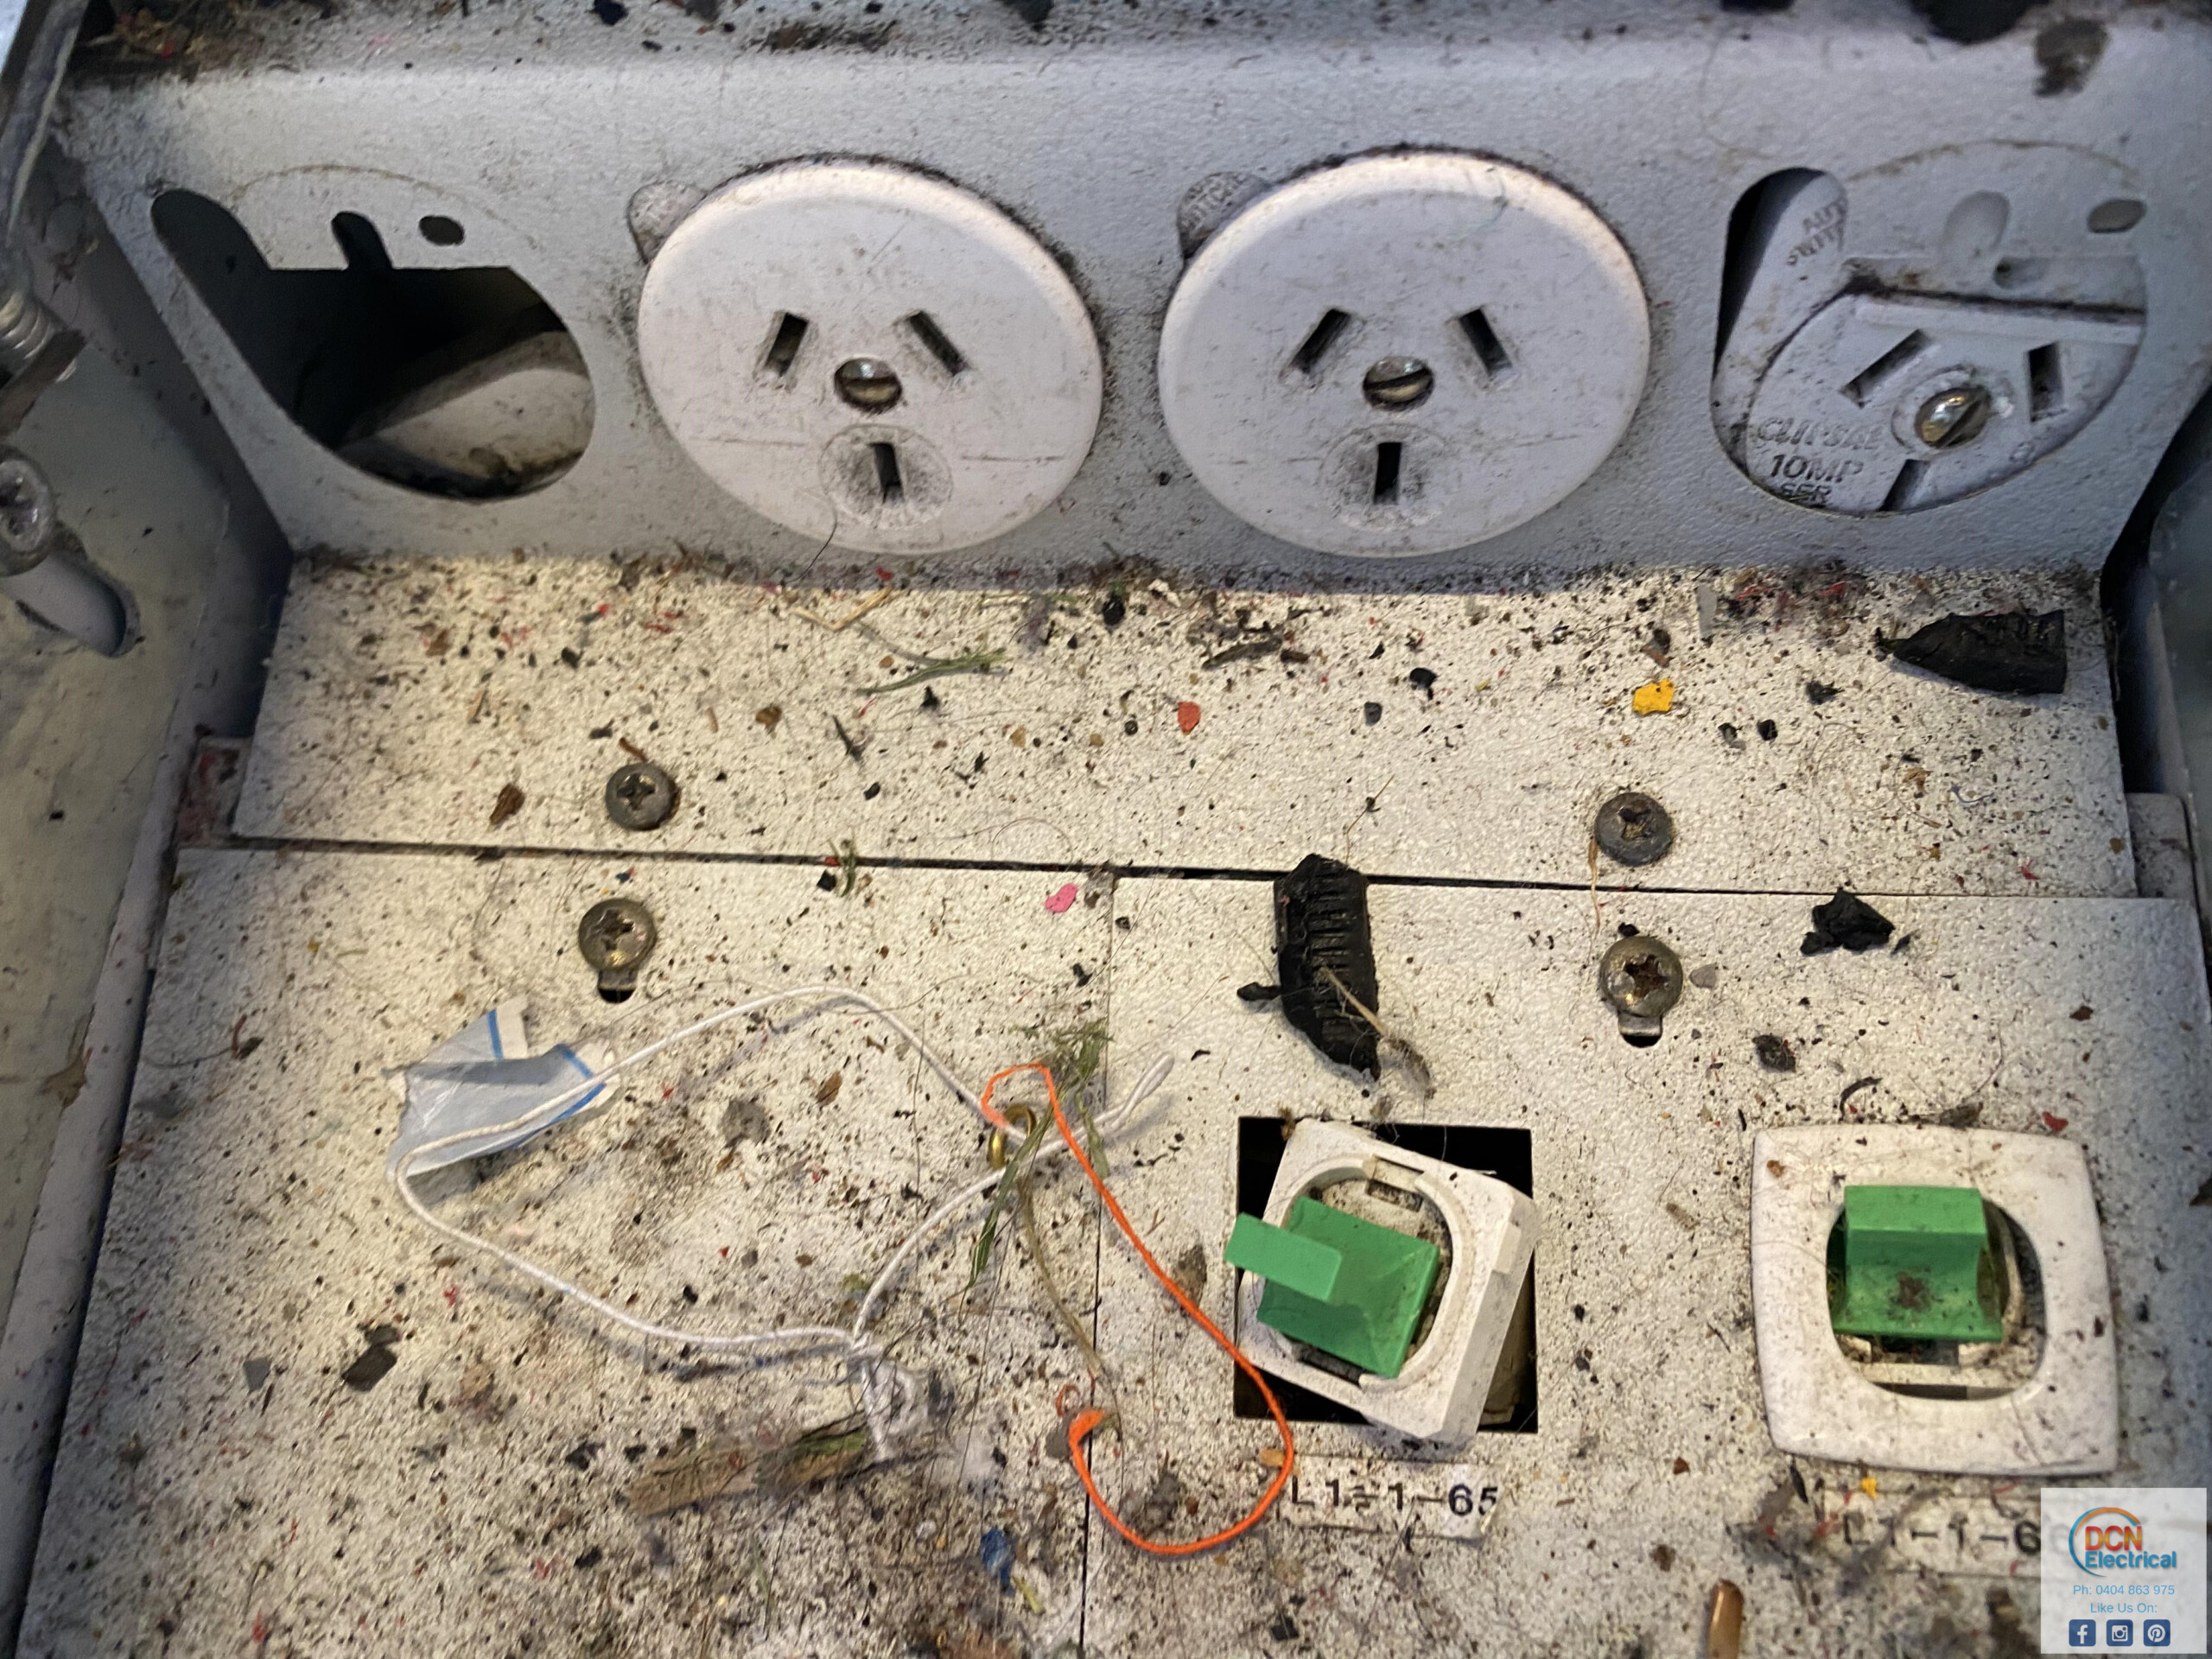 4 broken power points in a floor box